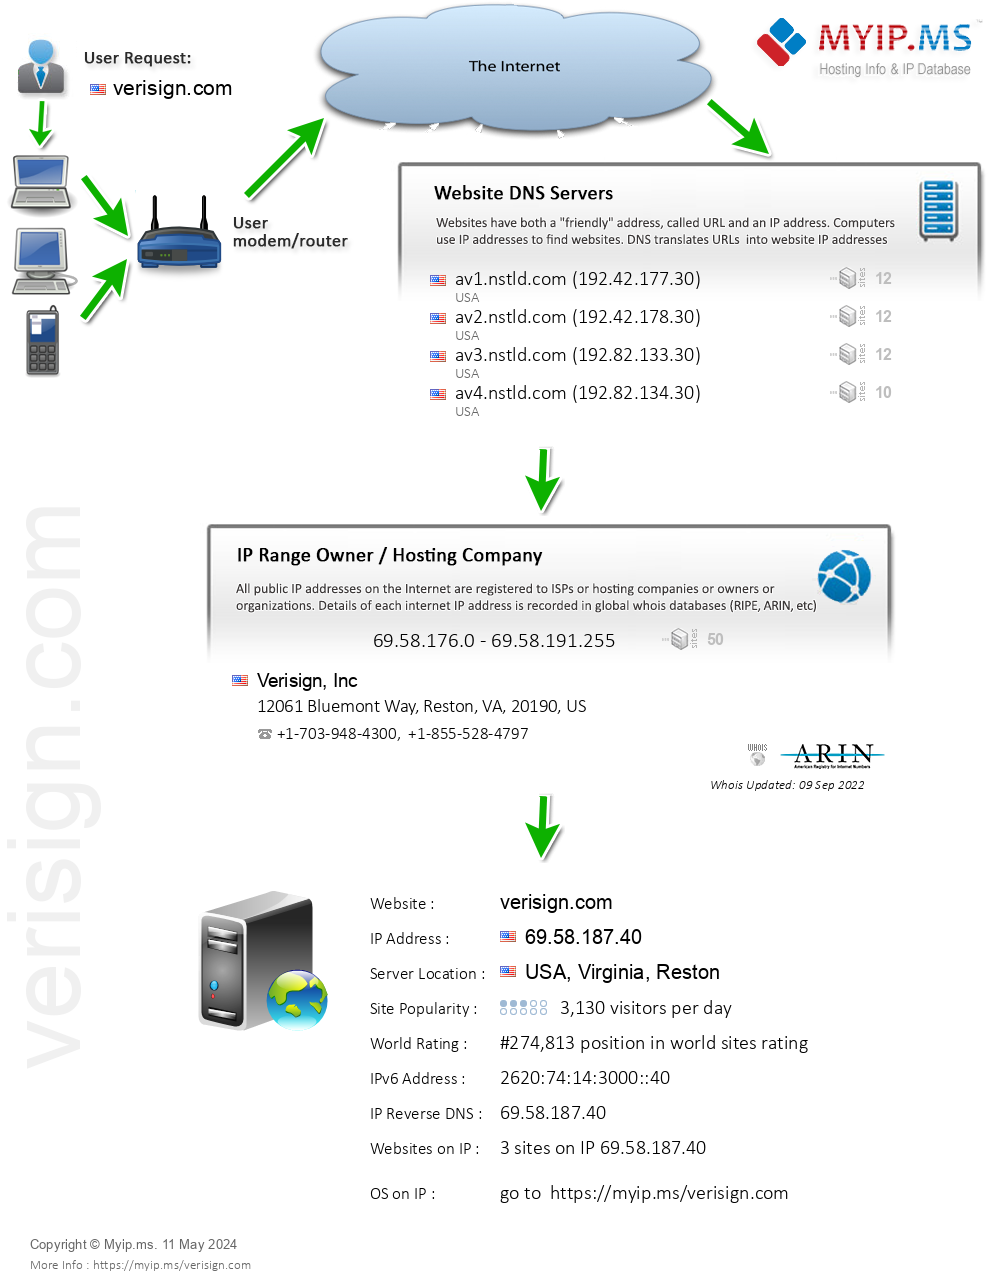 Verisign.com - Website Hosting Visual IP Diagram